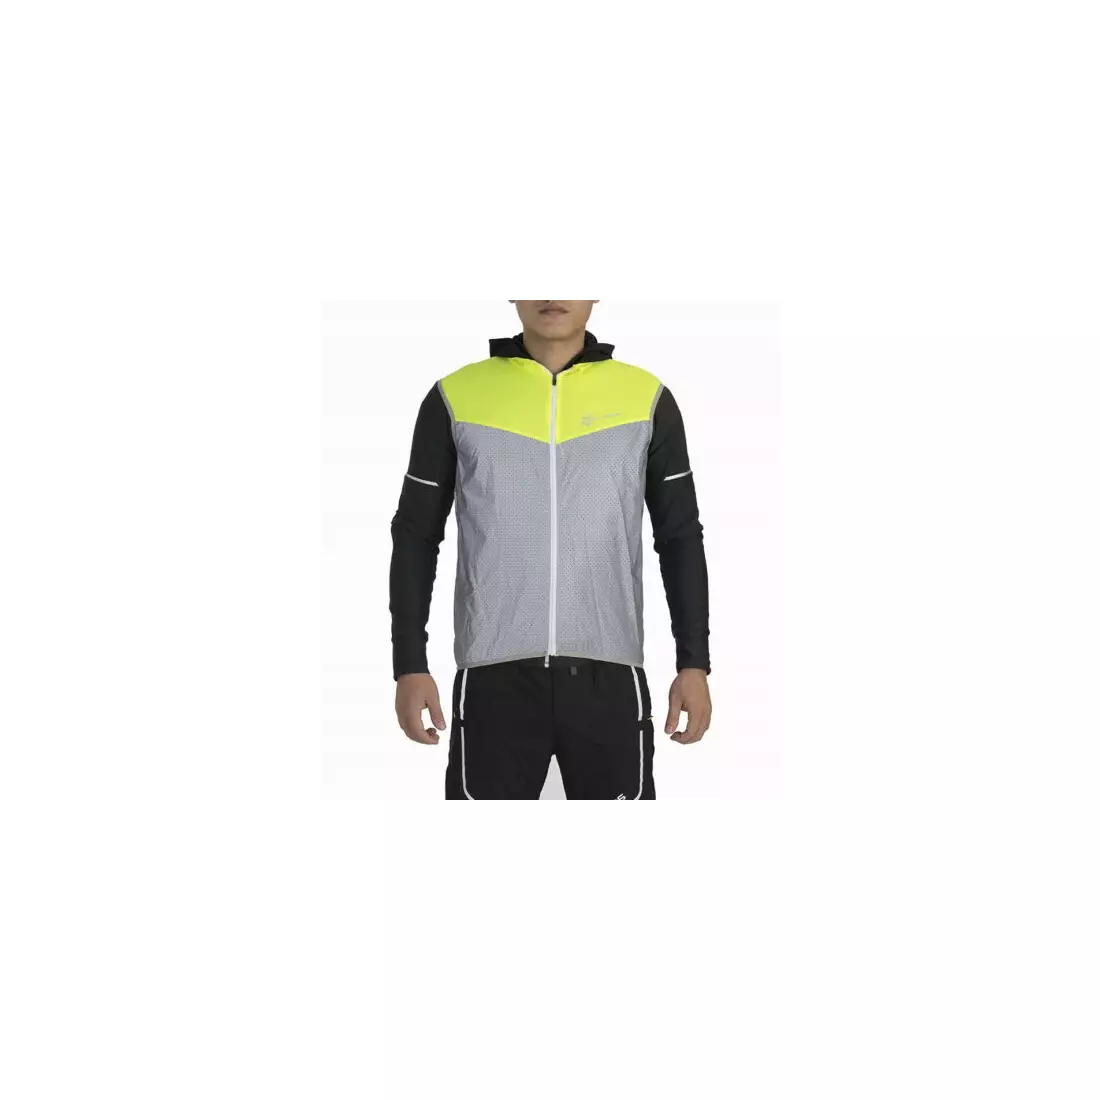 Rockbros pánská lehká cyklistická / sportovní vesta, reflexní, fluor FGY1002